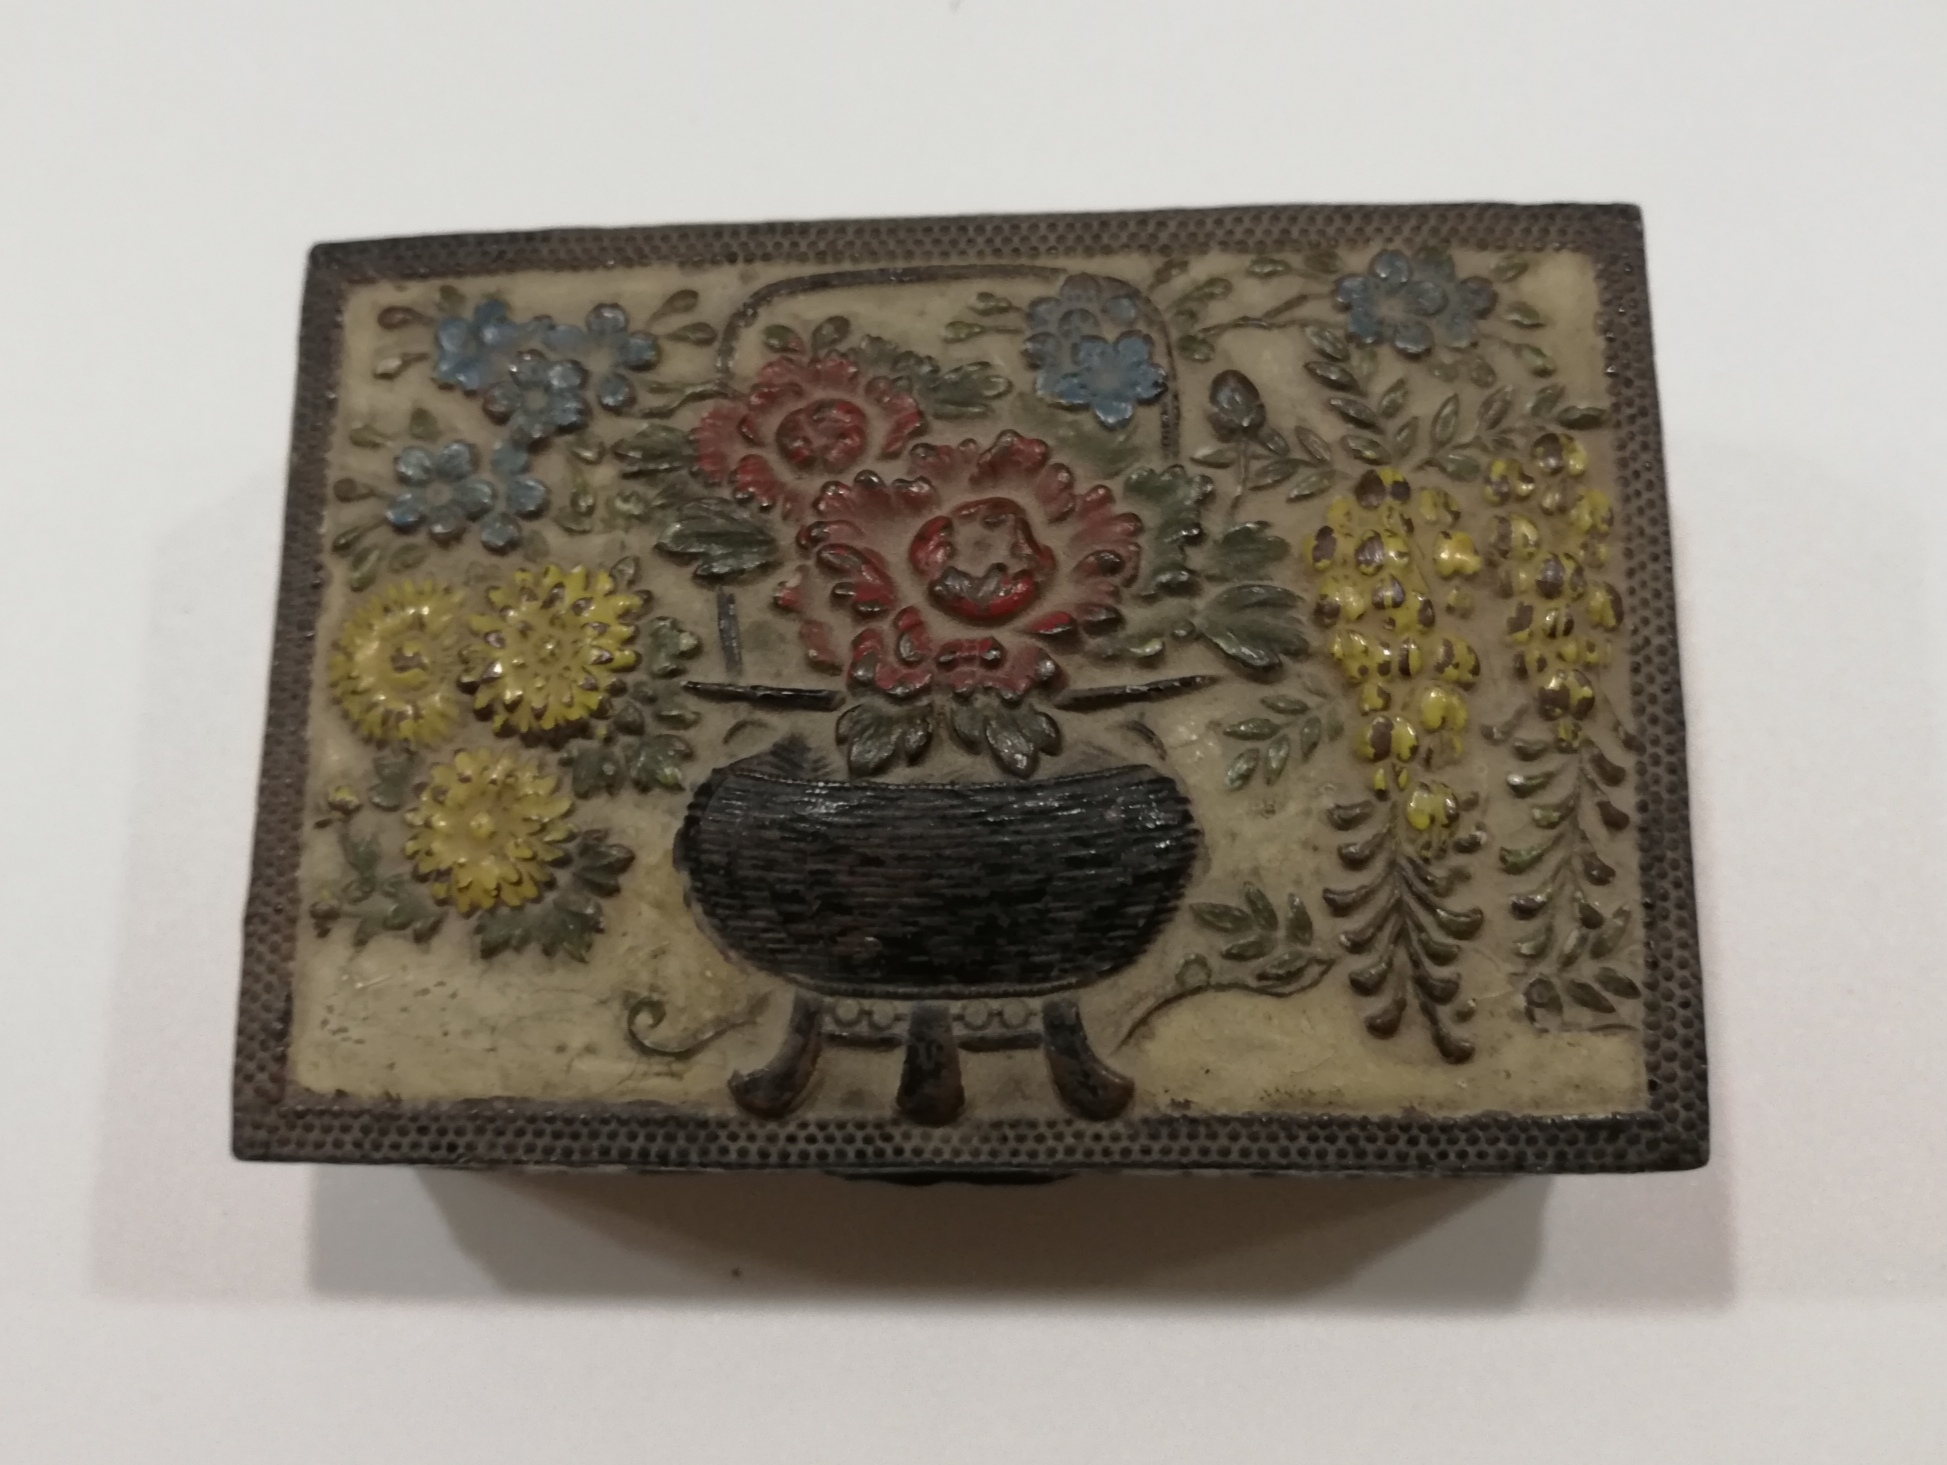 Antigua y bonita caja metálica con decoración floral en relieve